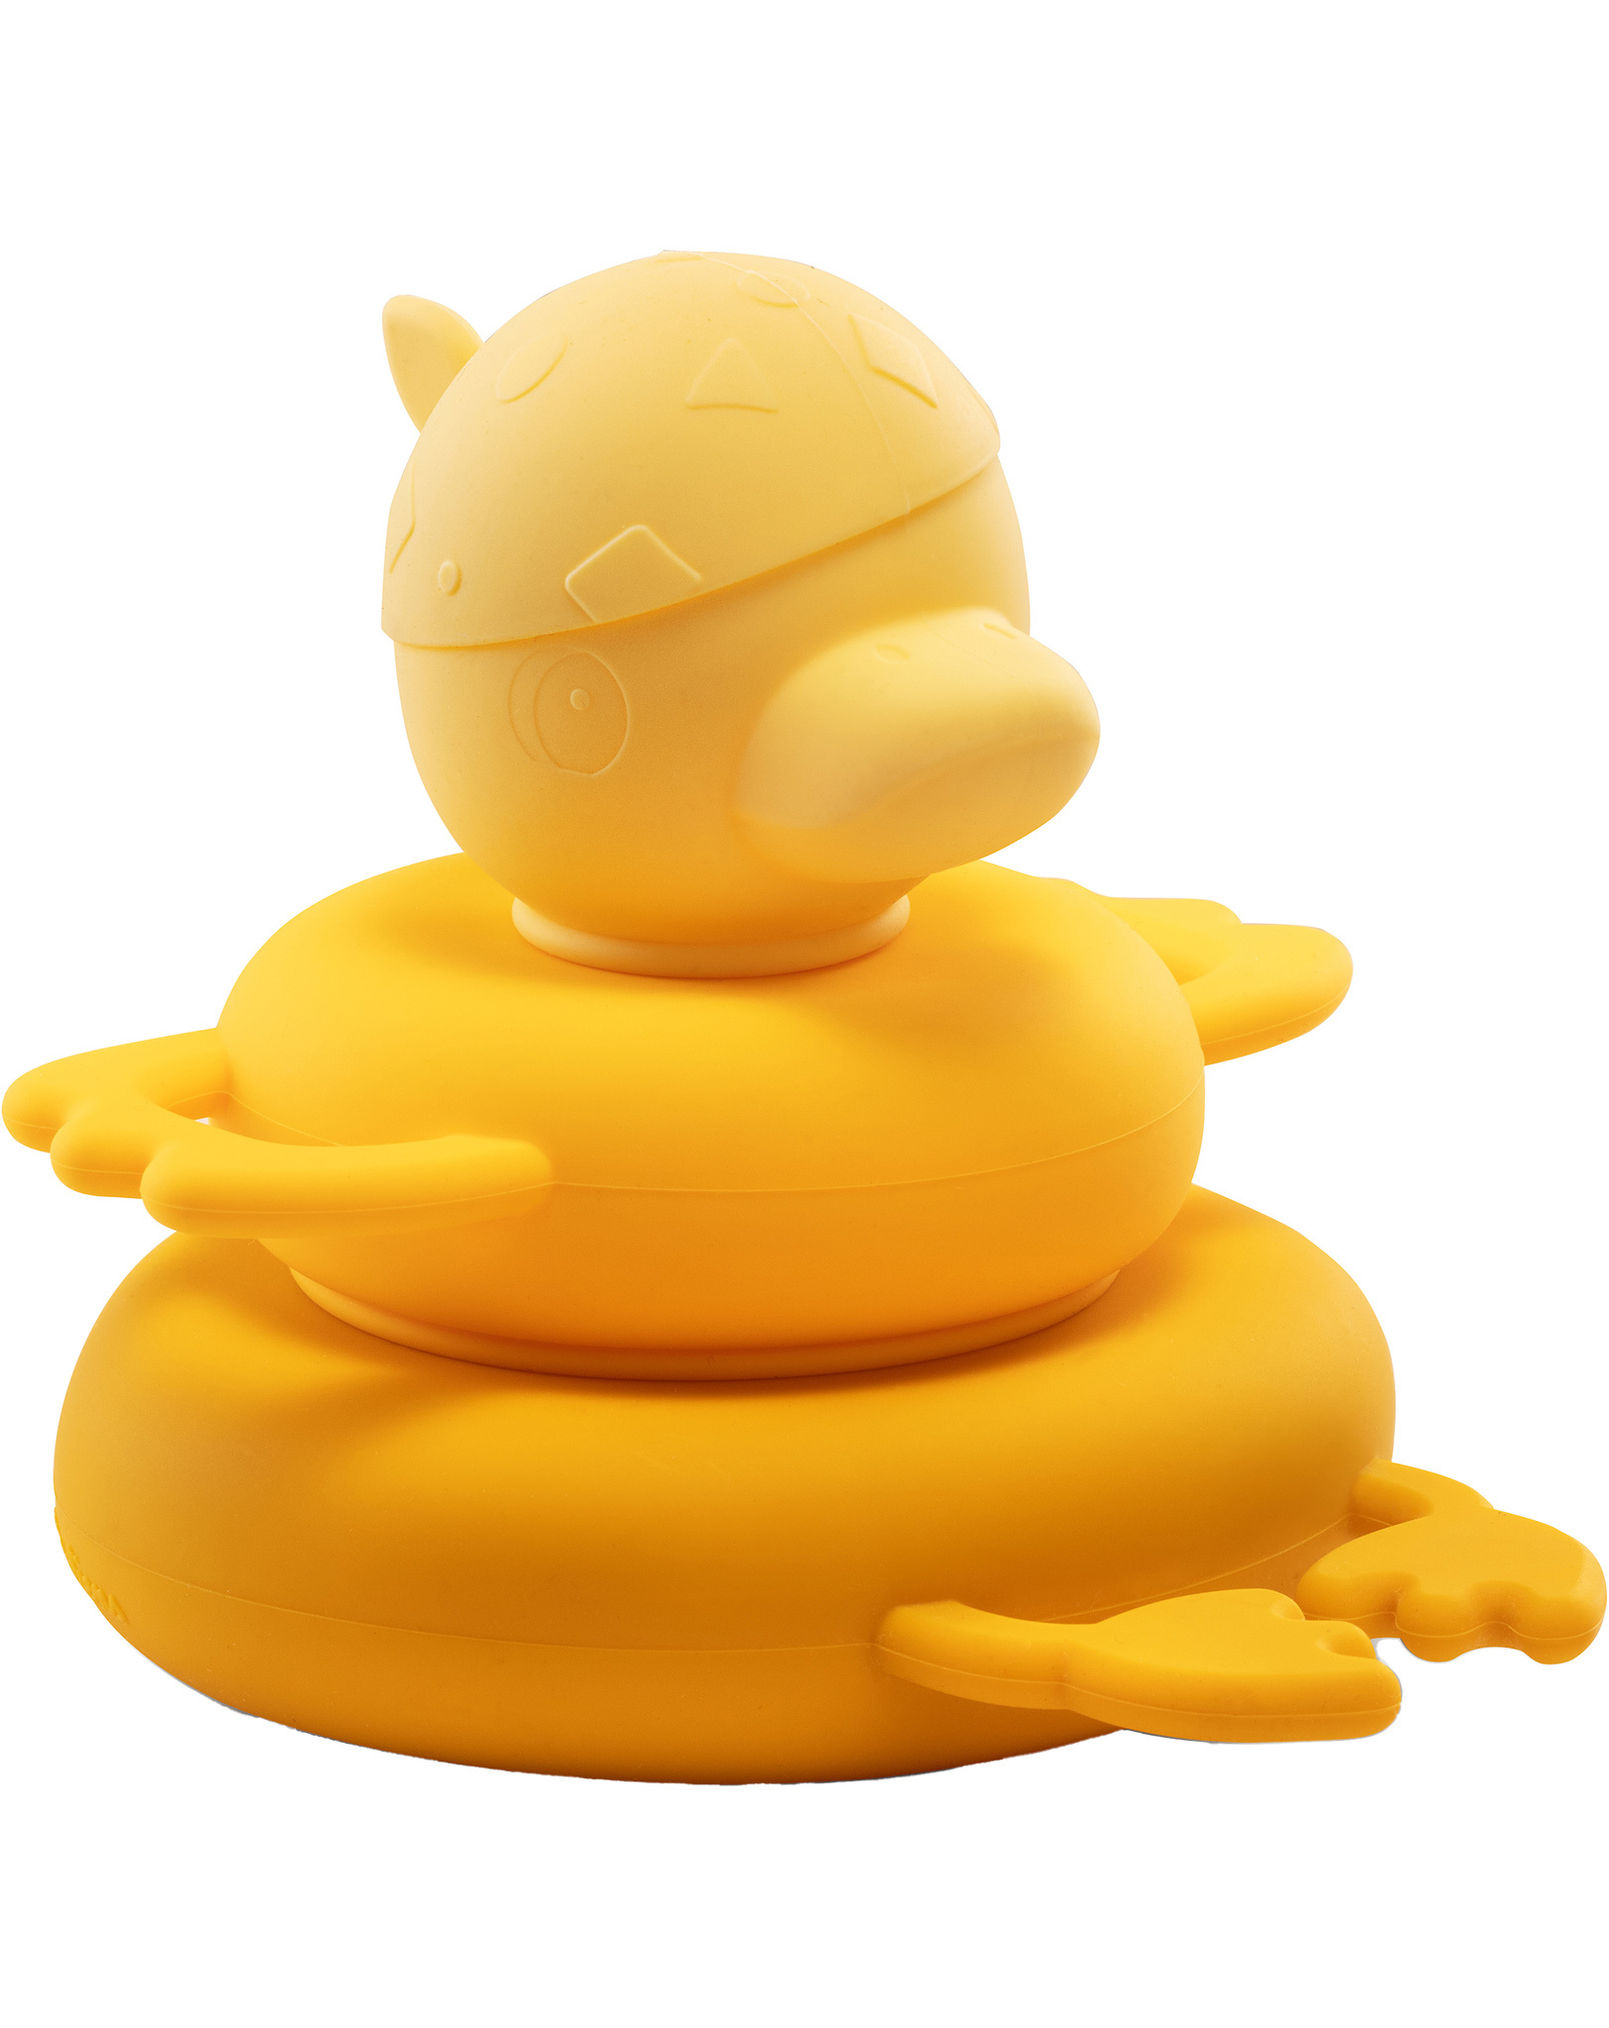 Badespielzeug GASPARD PYRAMIDE in gelb bestellen | Weltbild.at